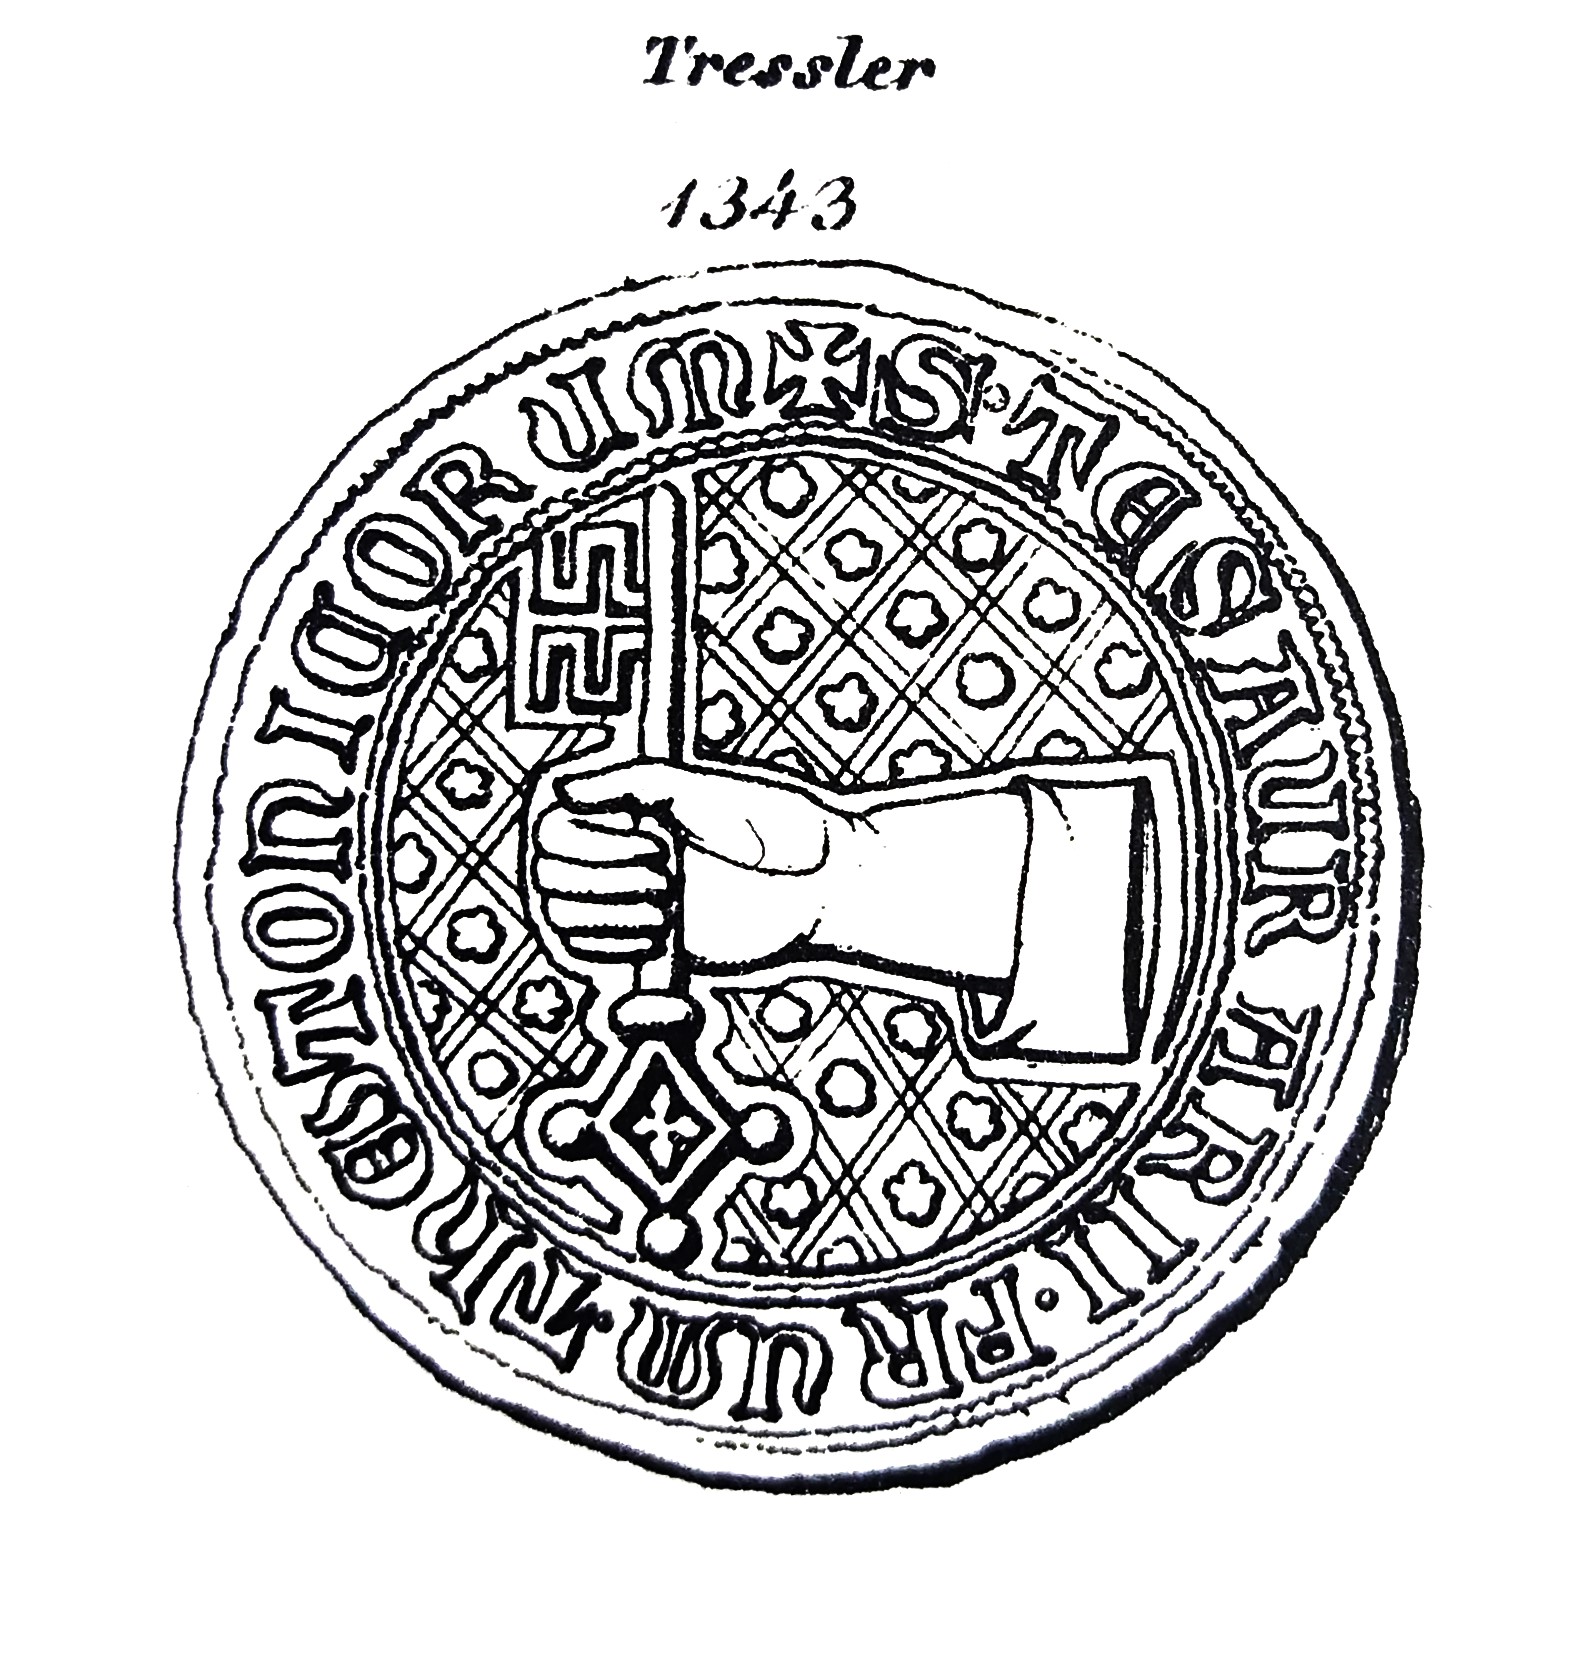 Das Bild zeigt eine schematische Darstellung des Siegels des Obersten Tresslers. Darauf abgebildet ist eine Hand, die einen Schlüssel hält.